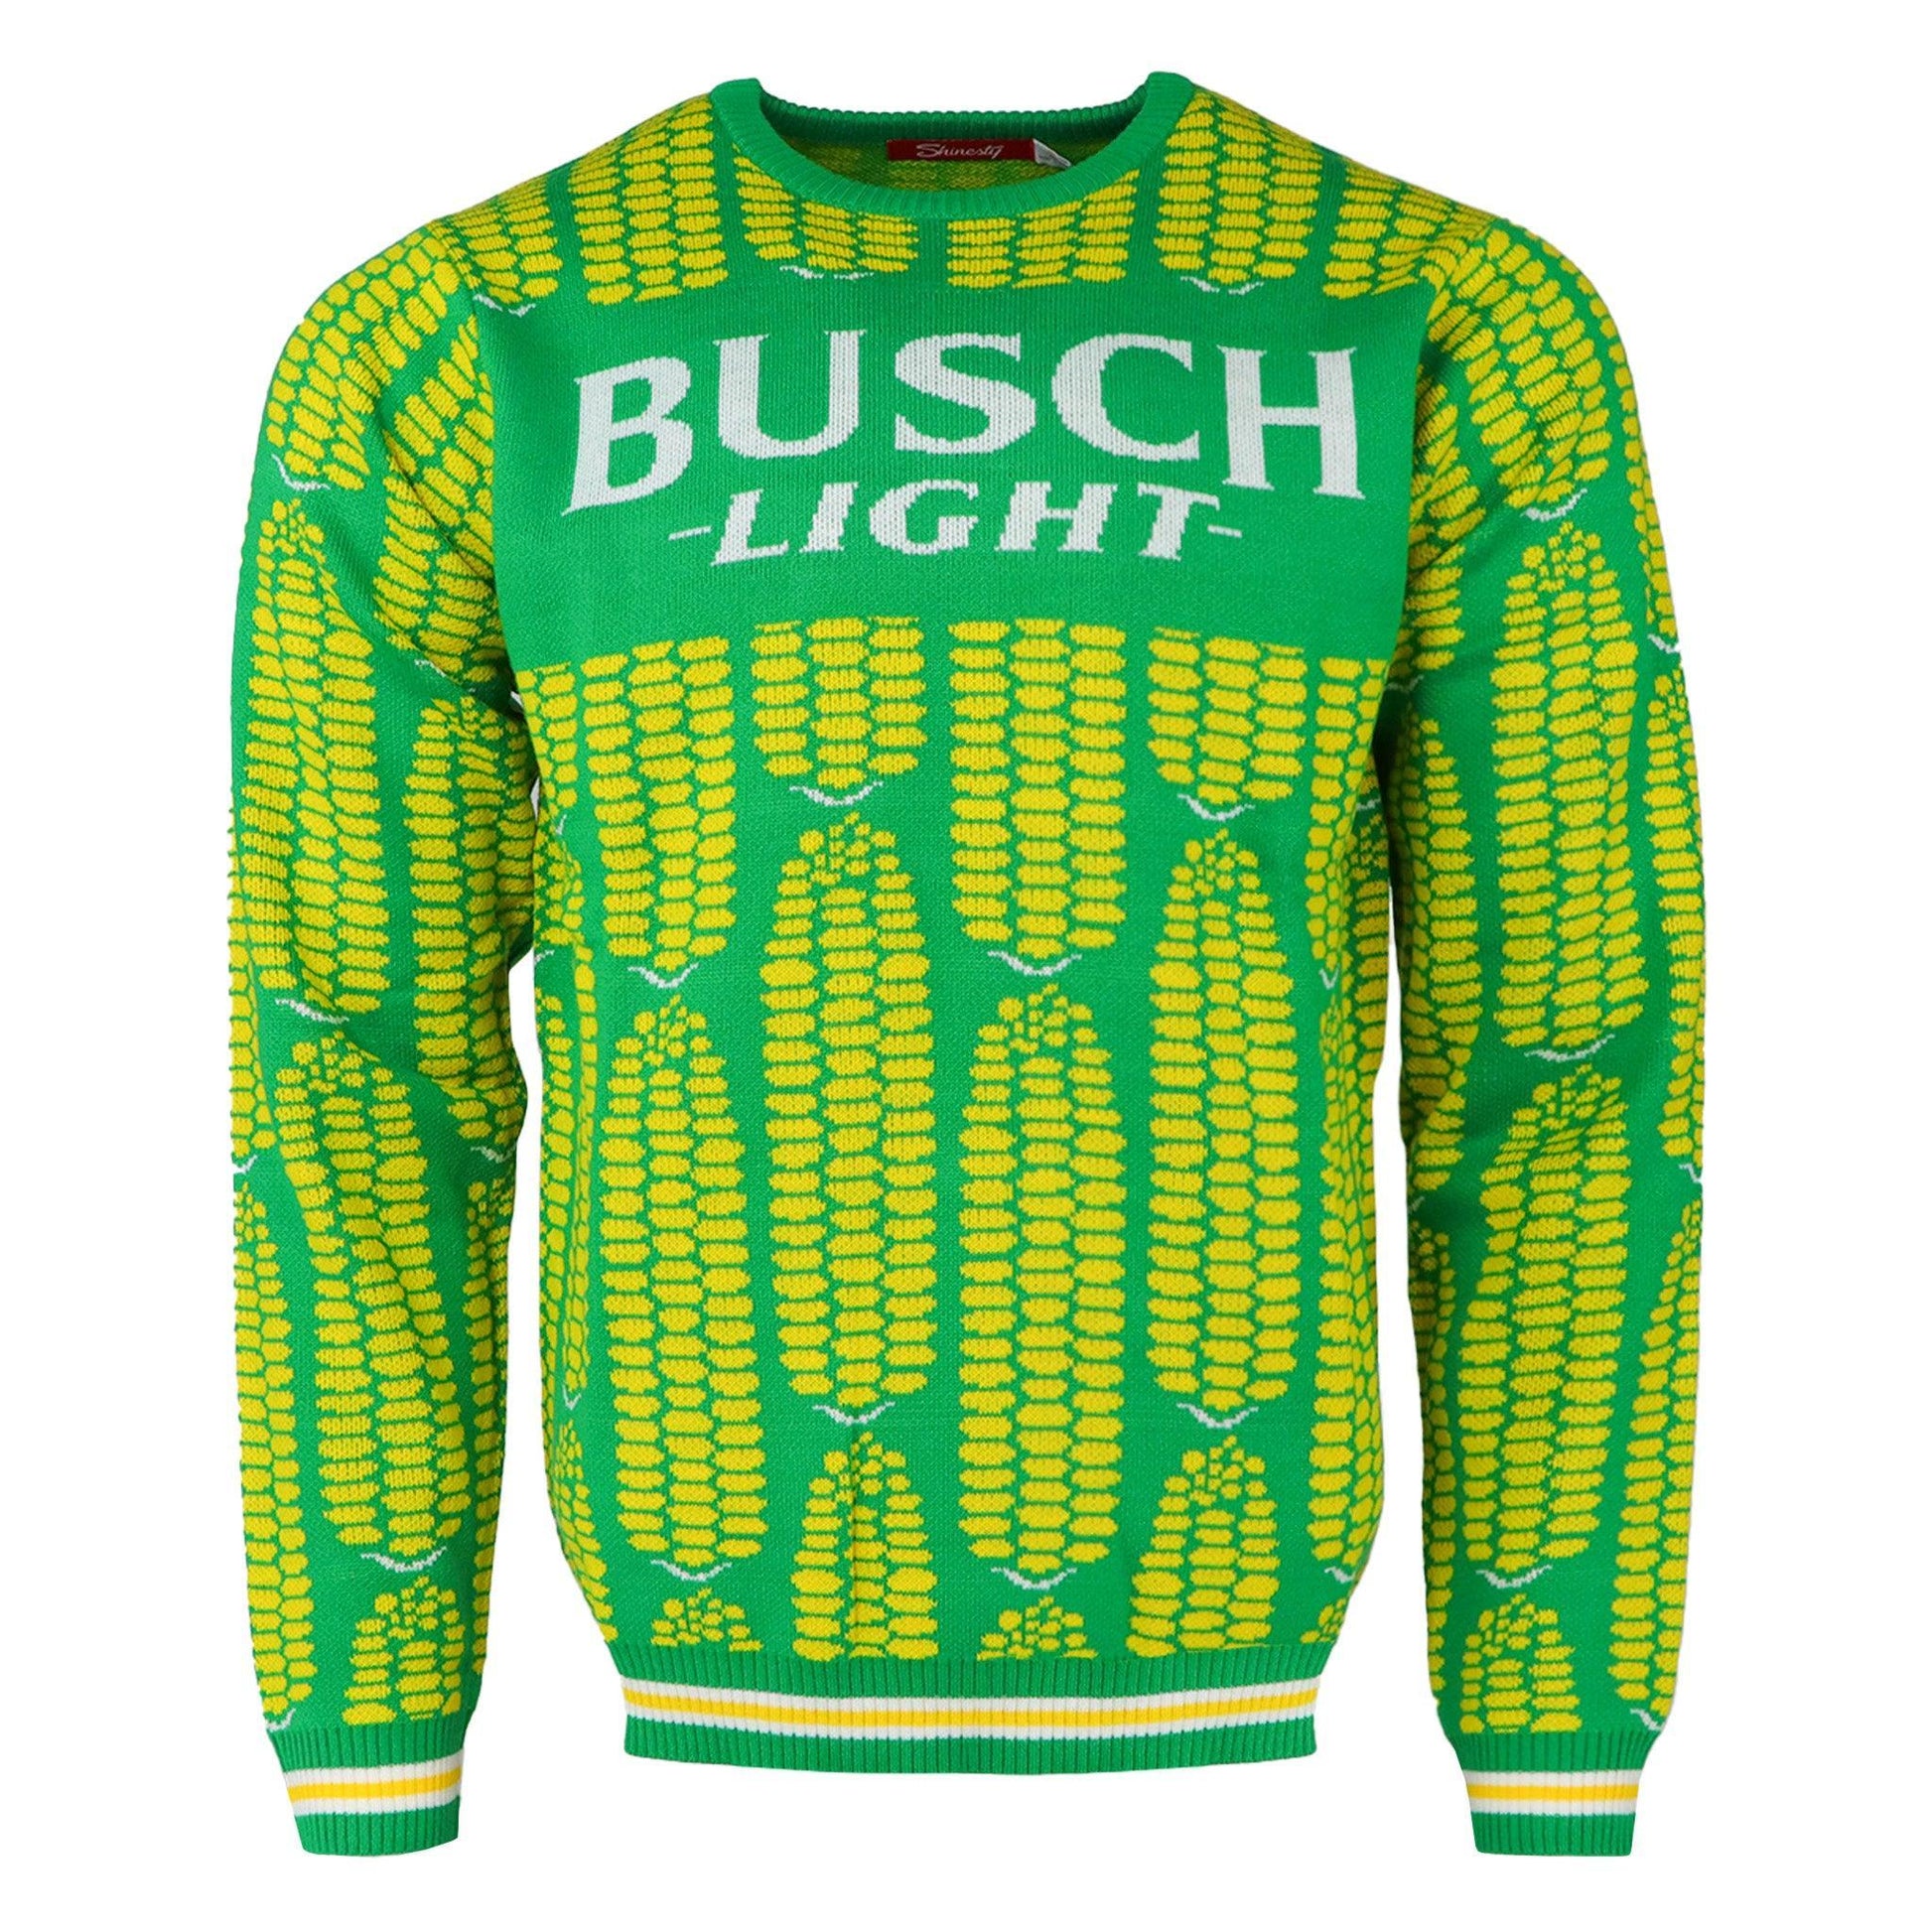 Busch Light Shuck Yeah Sweater